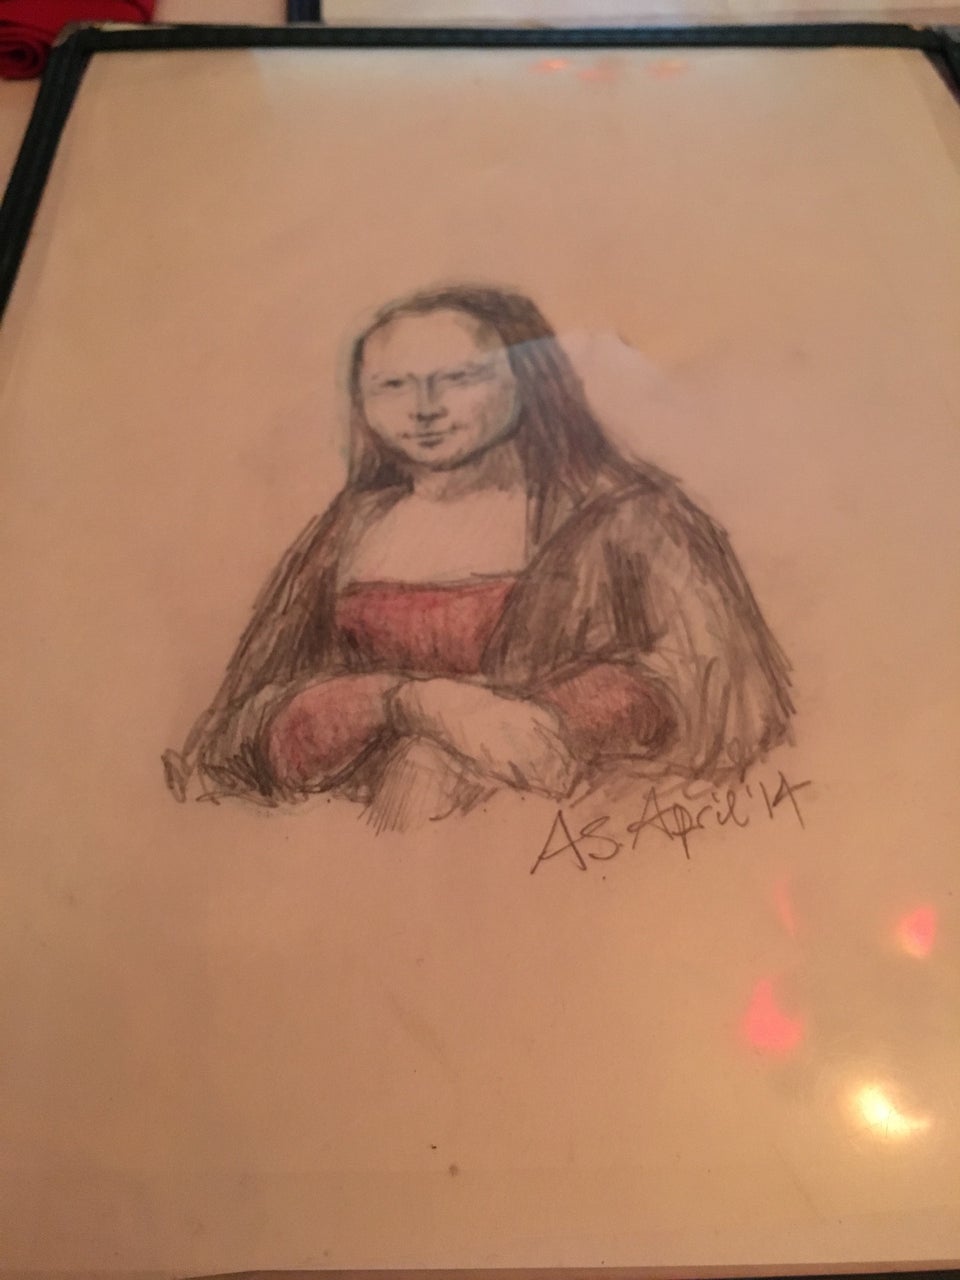 Photo of Mona Lisa